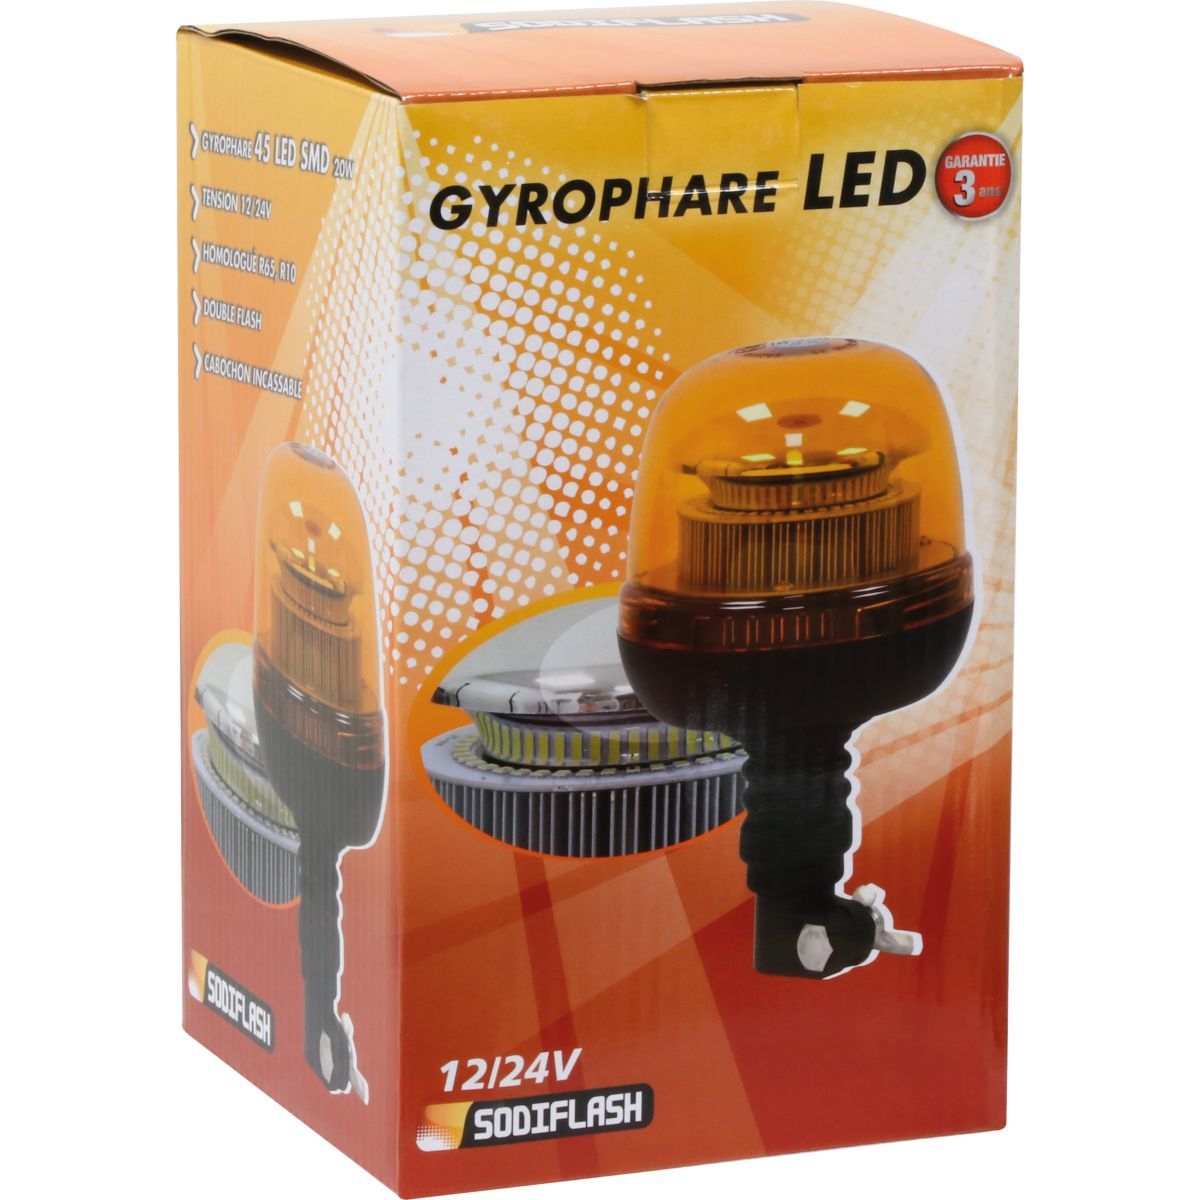 Gyrophare LED Crystal Tige Rigide Flash - Gyrophares